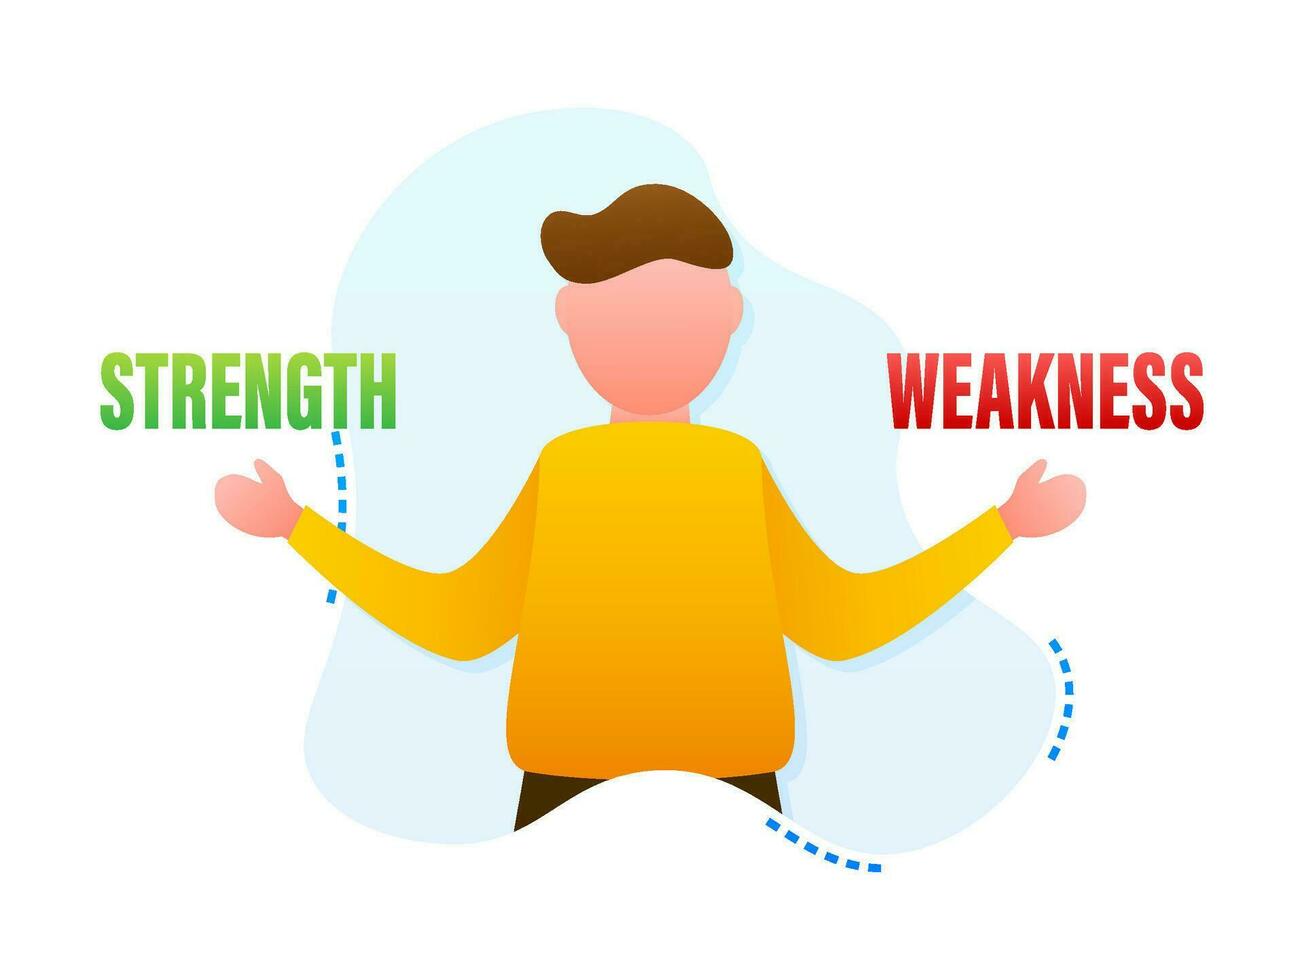 persoonlijk sterke punten en zwakke punten concept, vector illustratie van een Mens balanceren beide zijden voor zelf ontwikkeling en groei